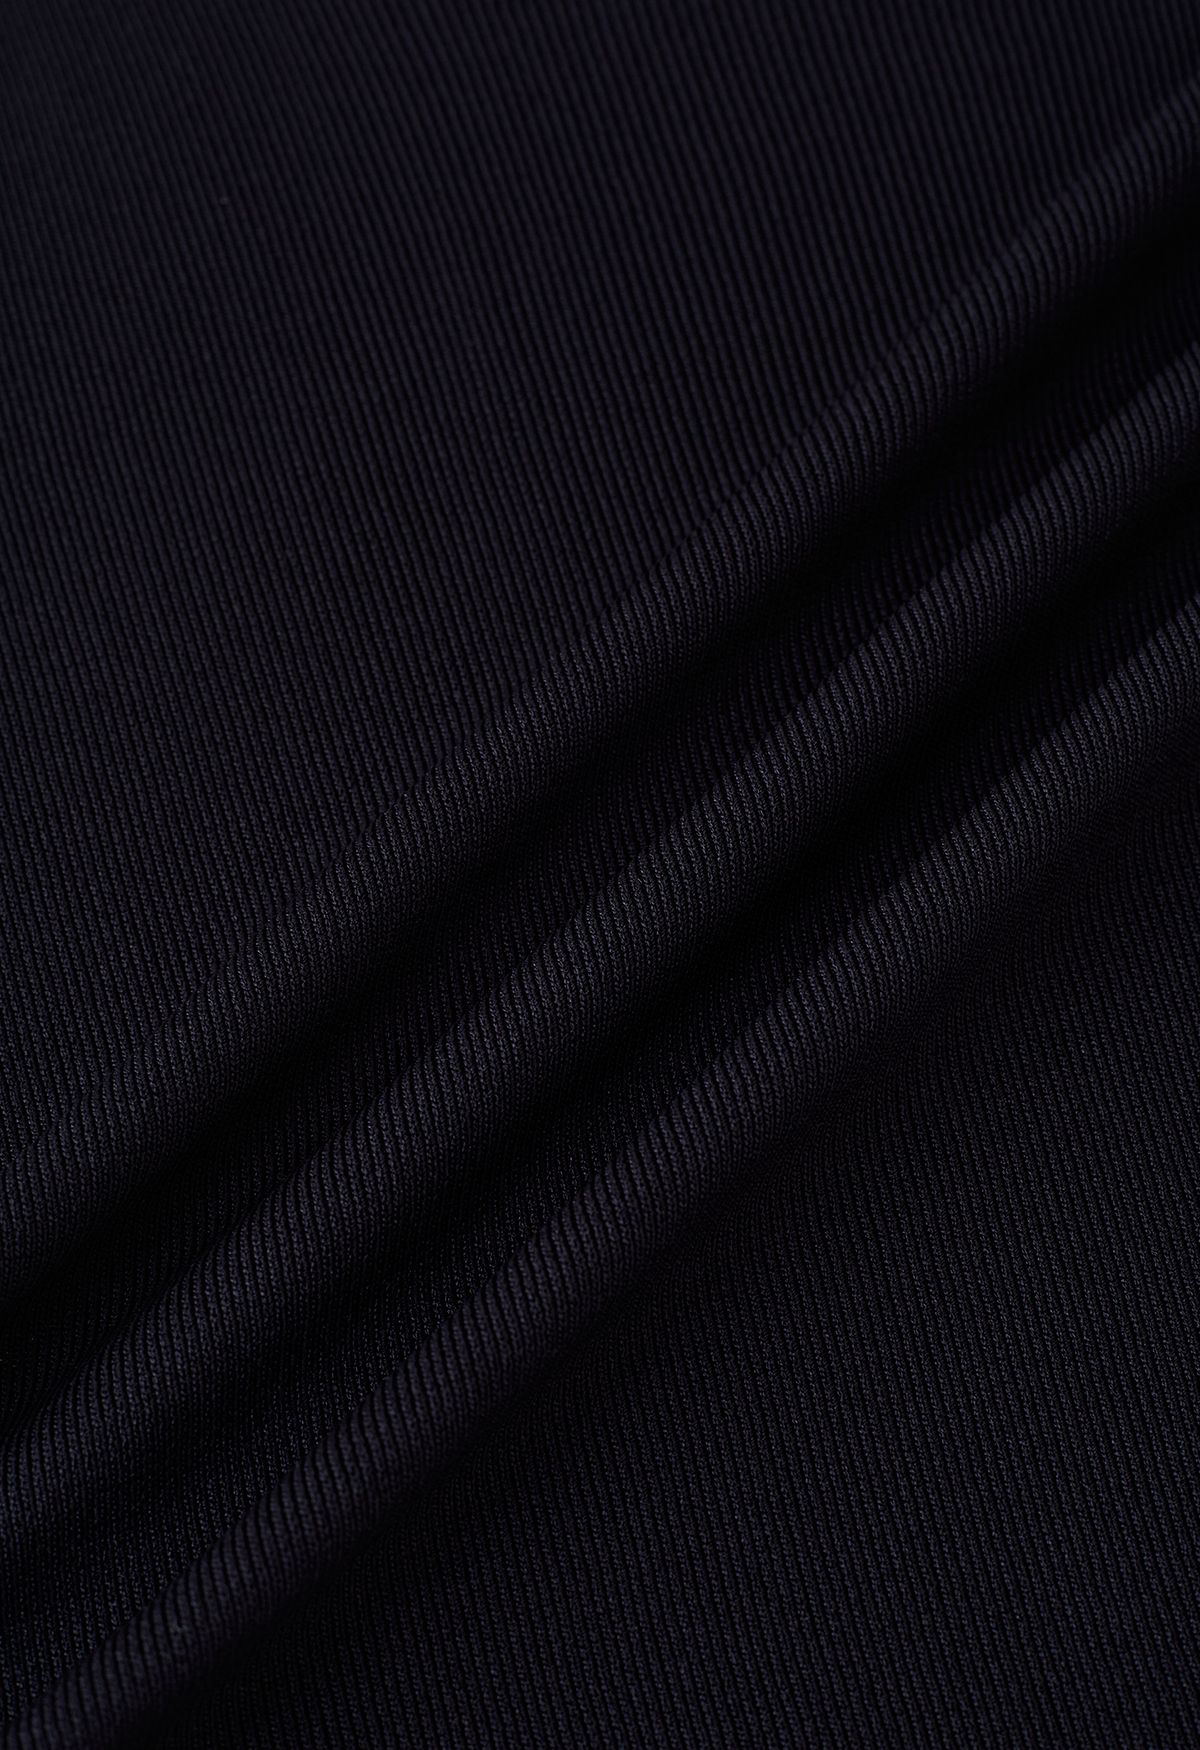 Raw-Cut Edge Knit Tank Top in Black